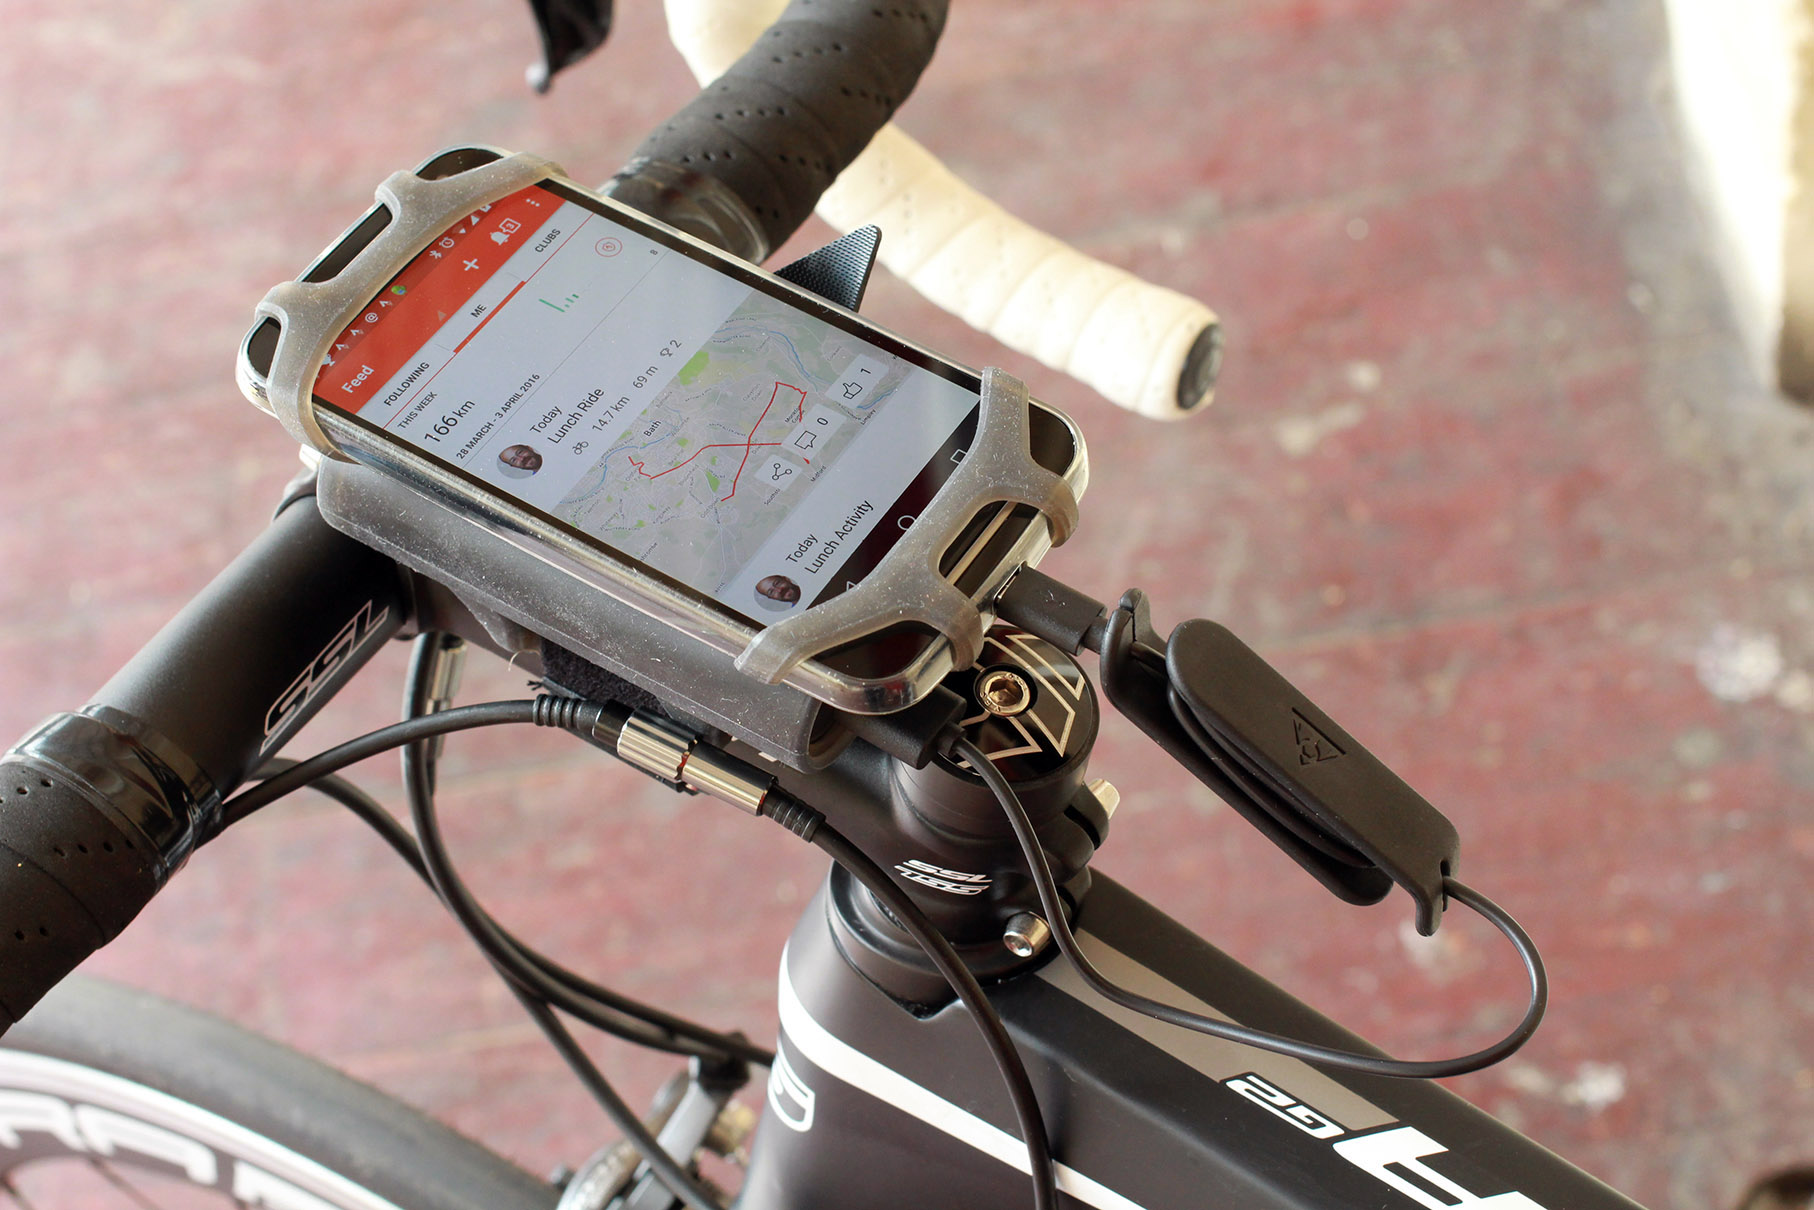 saarge bike phone holder